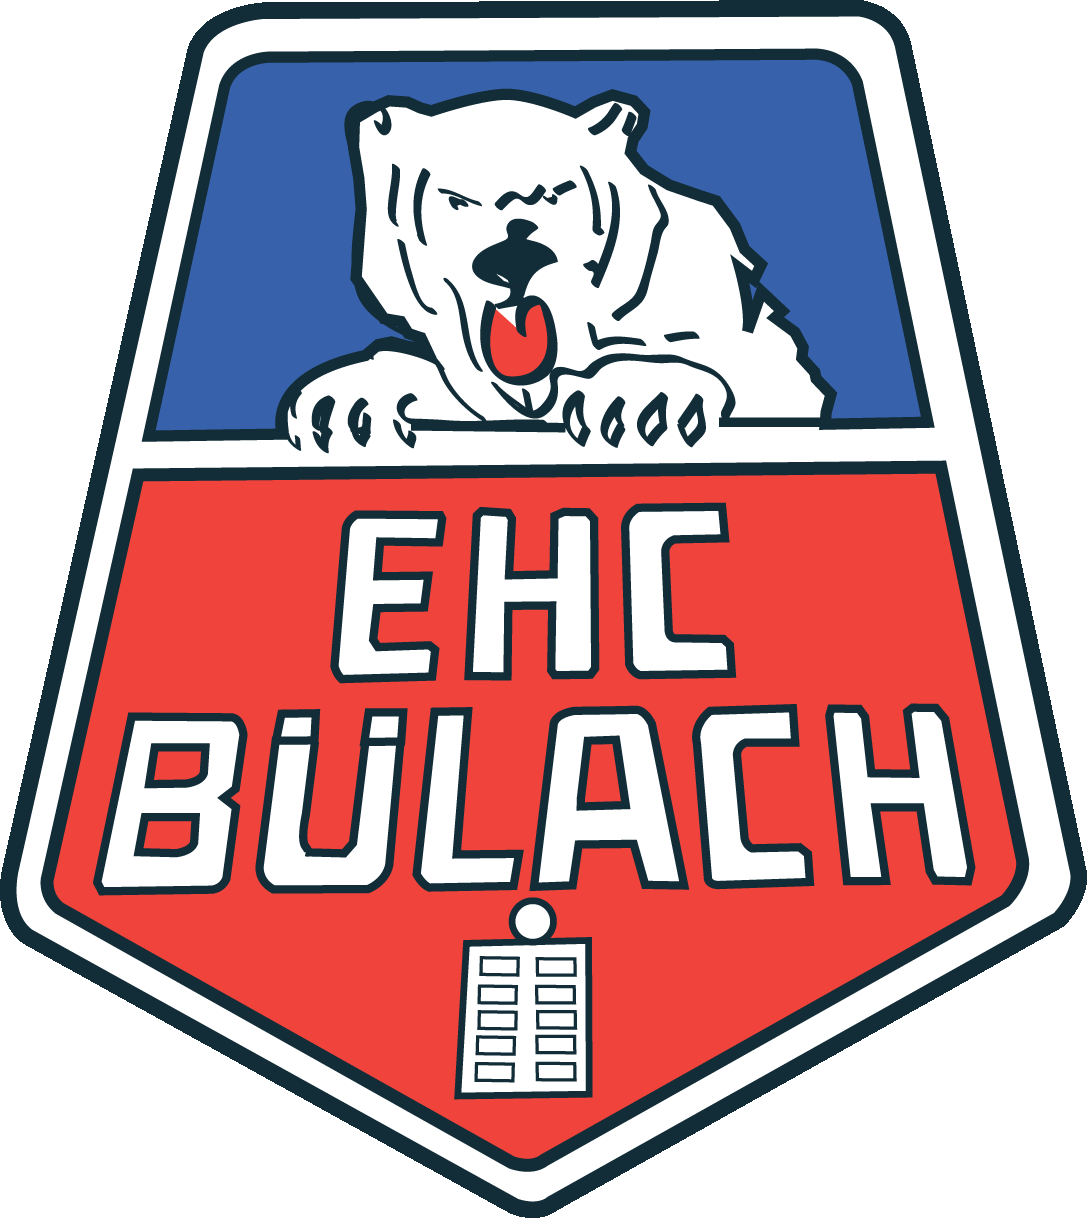 EHC Bülach - team logo